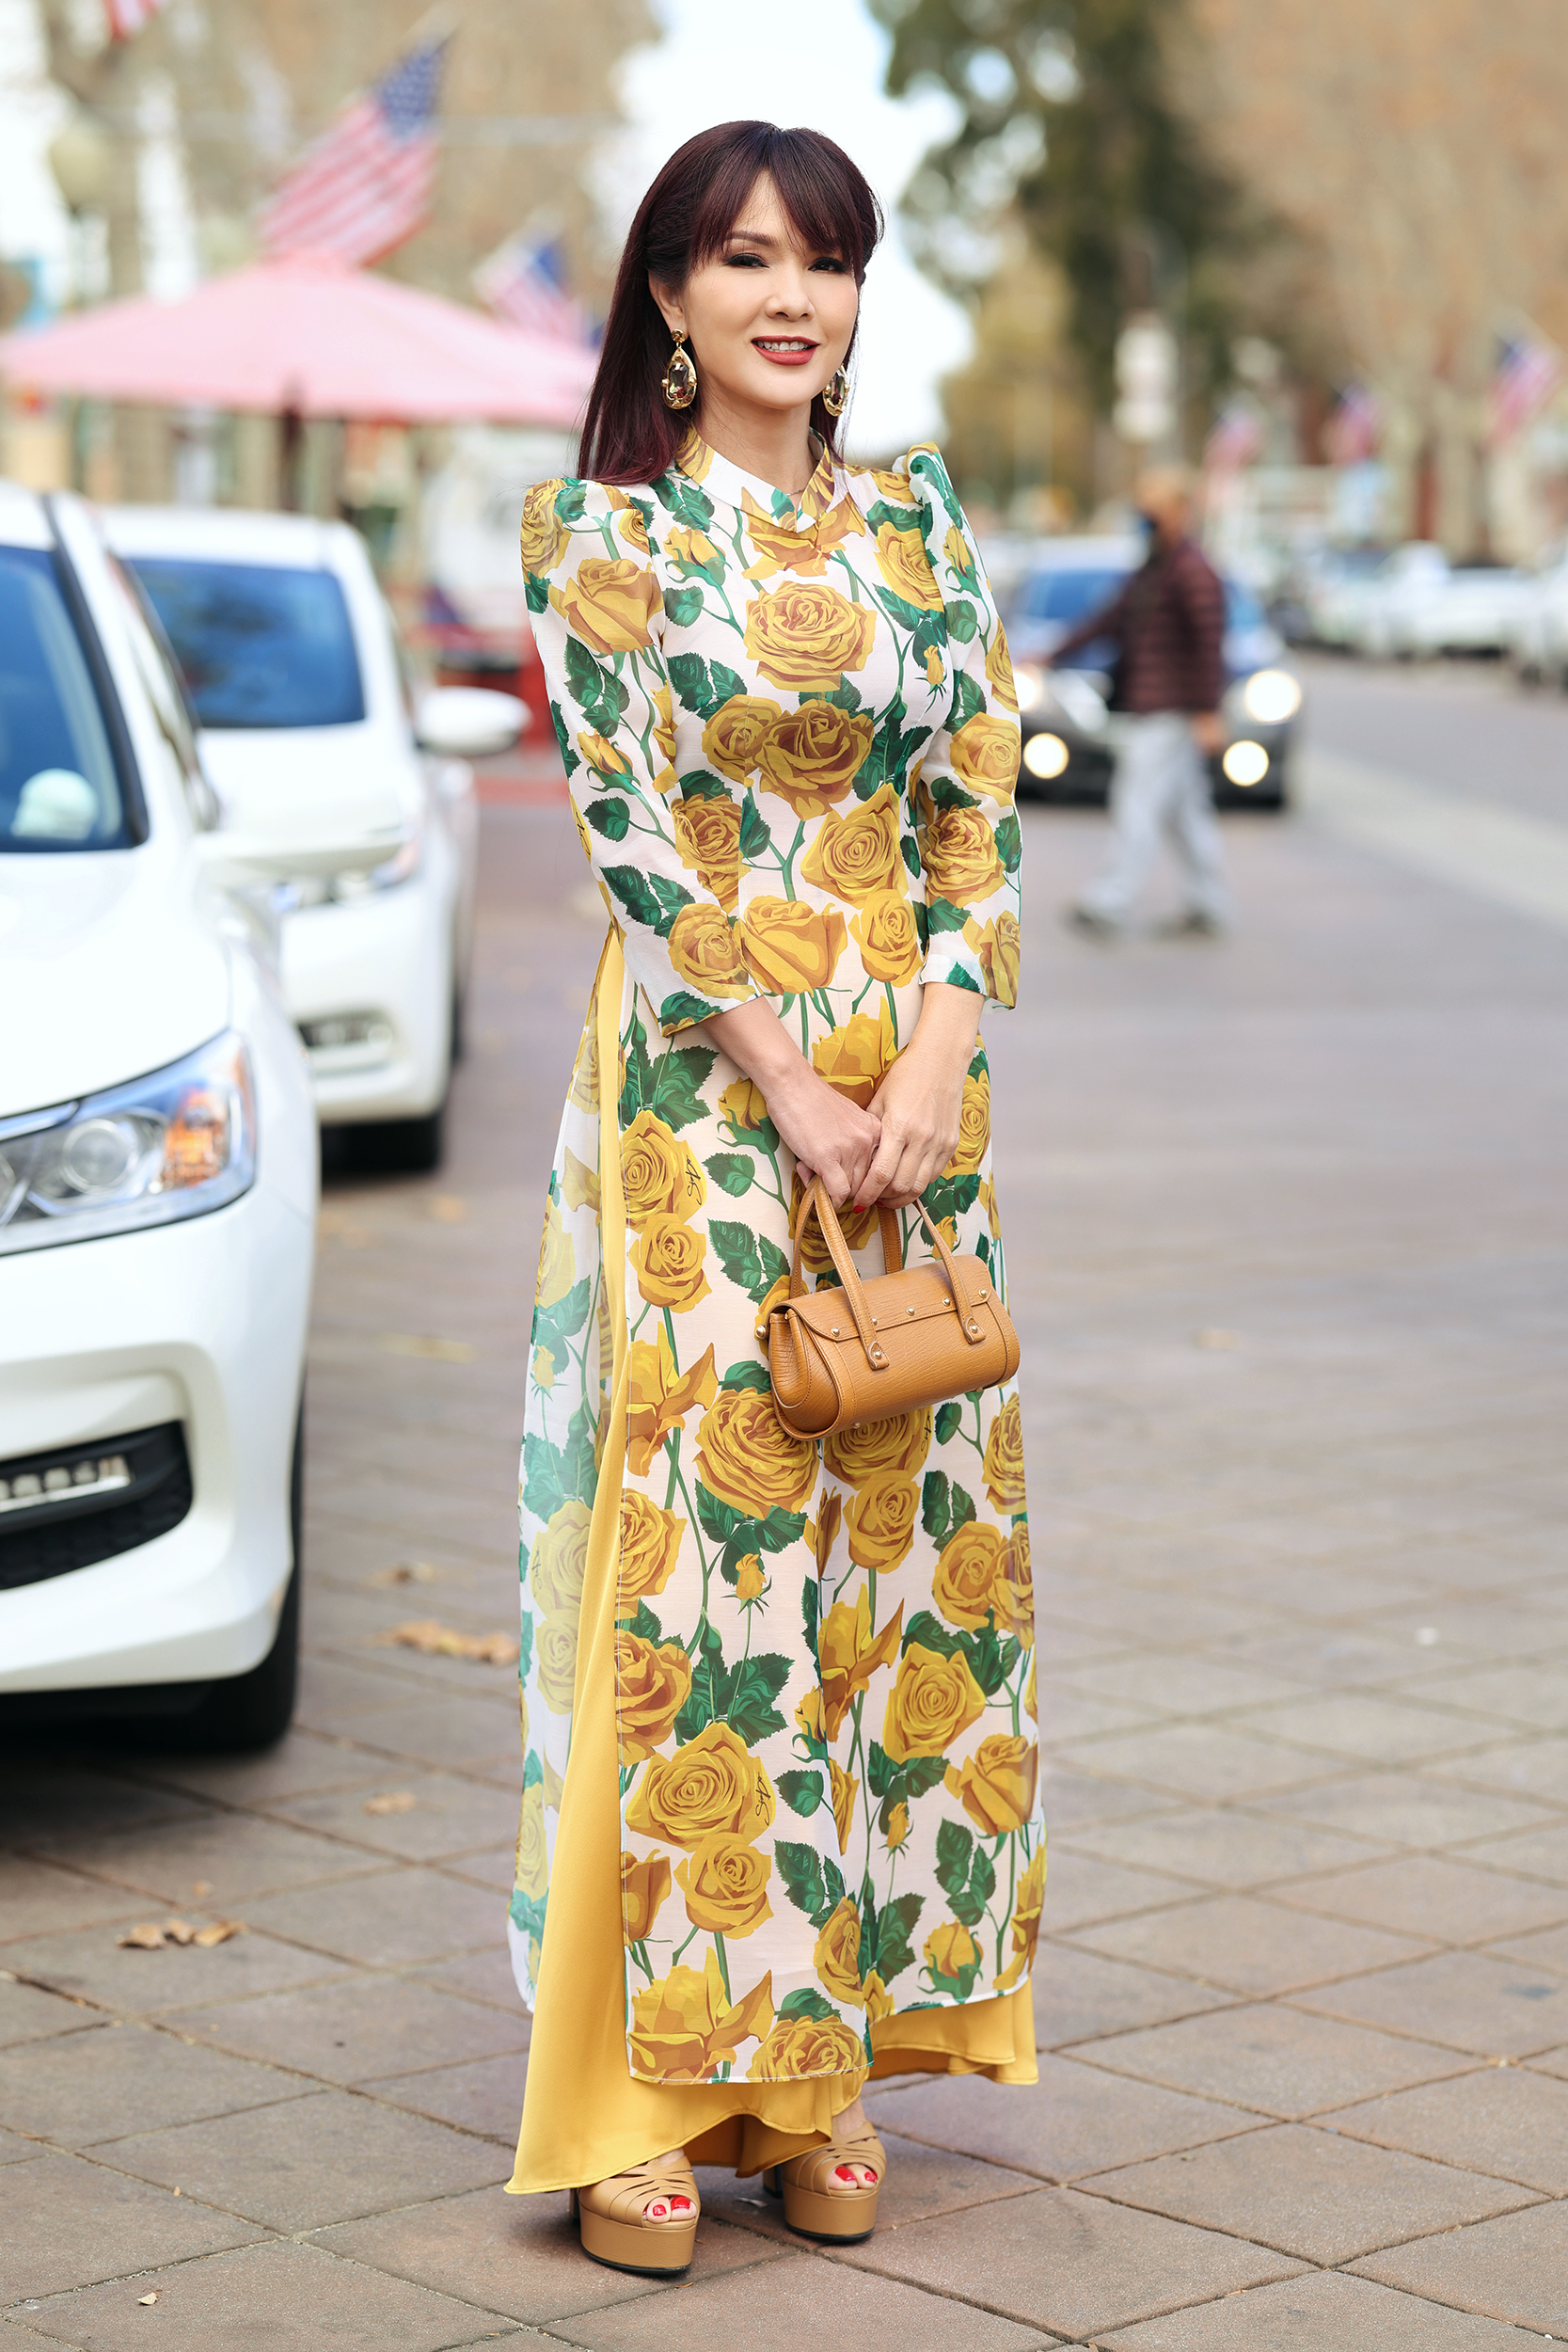 Hoa hậu Ngọc Hân với ý tưởng kết hợp văn hóa Nhật Bản và Việt Nam trong tà áo dài - ảnh 11